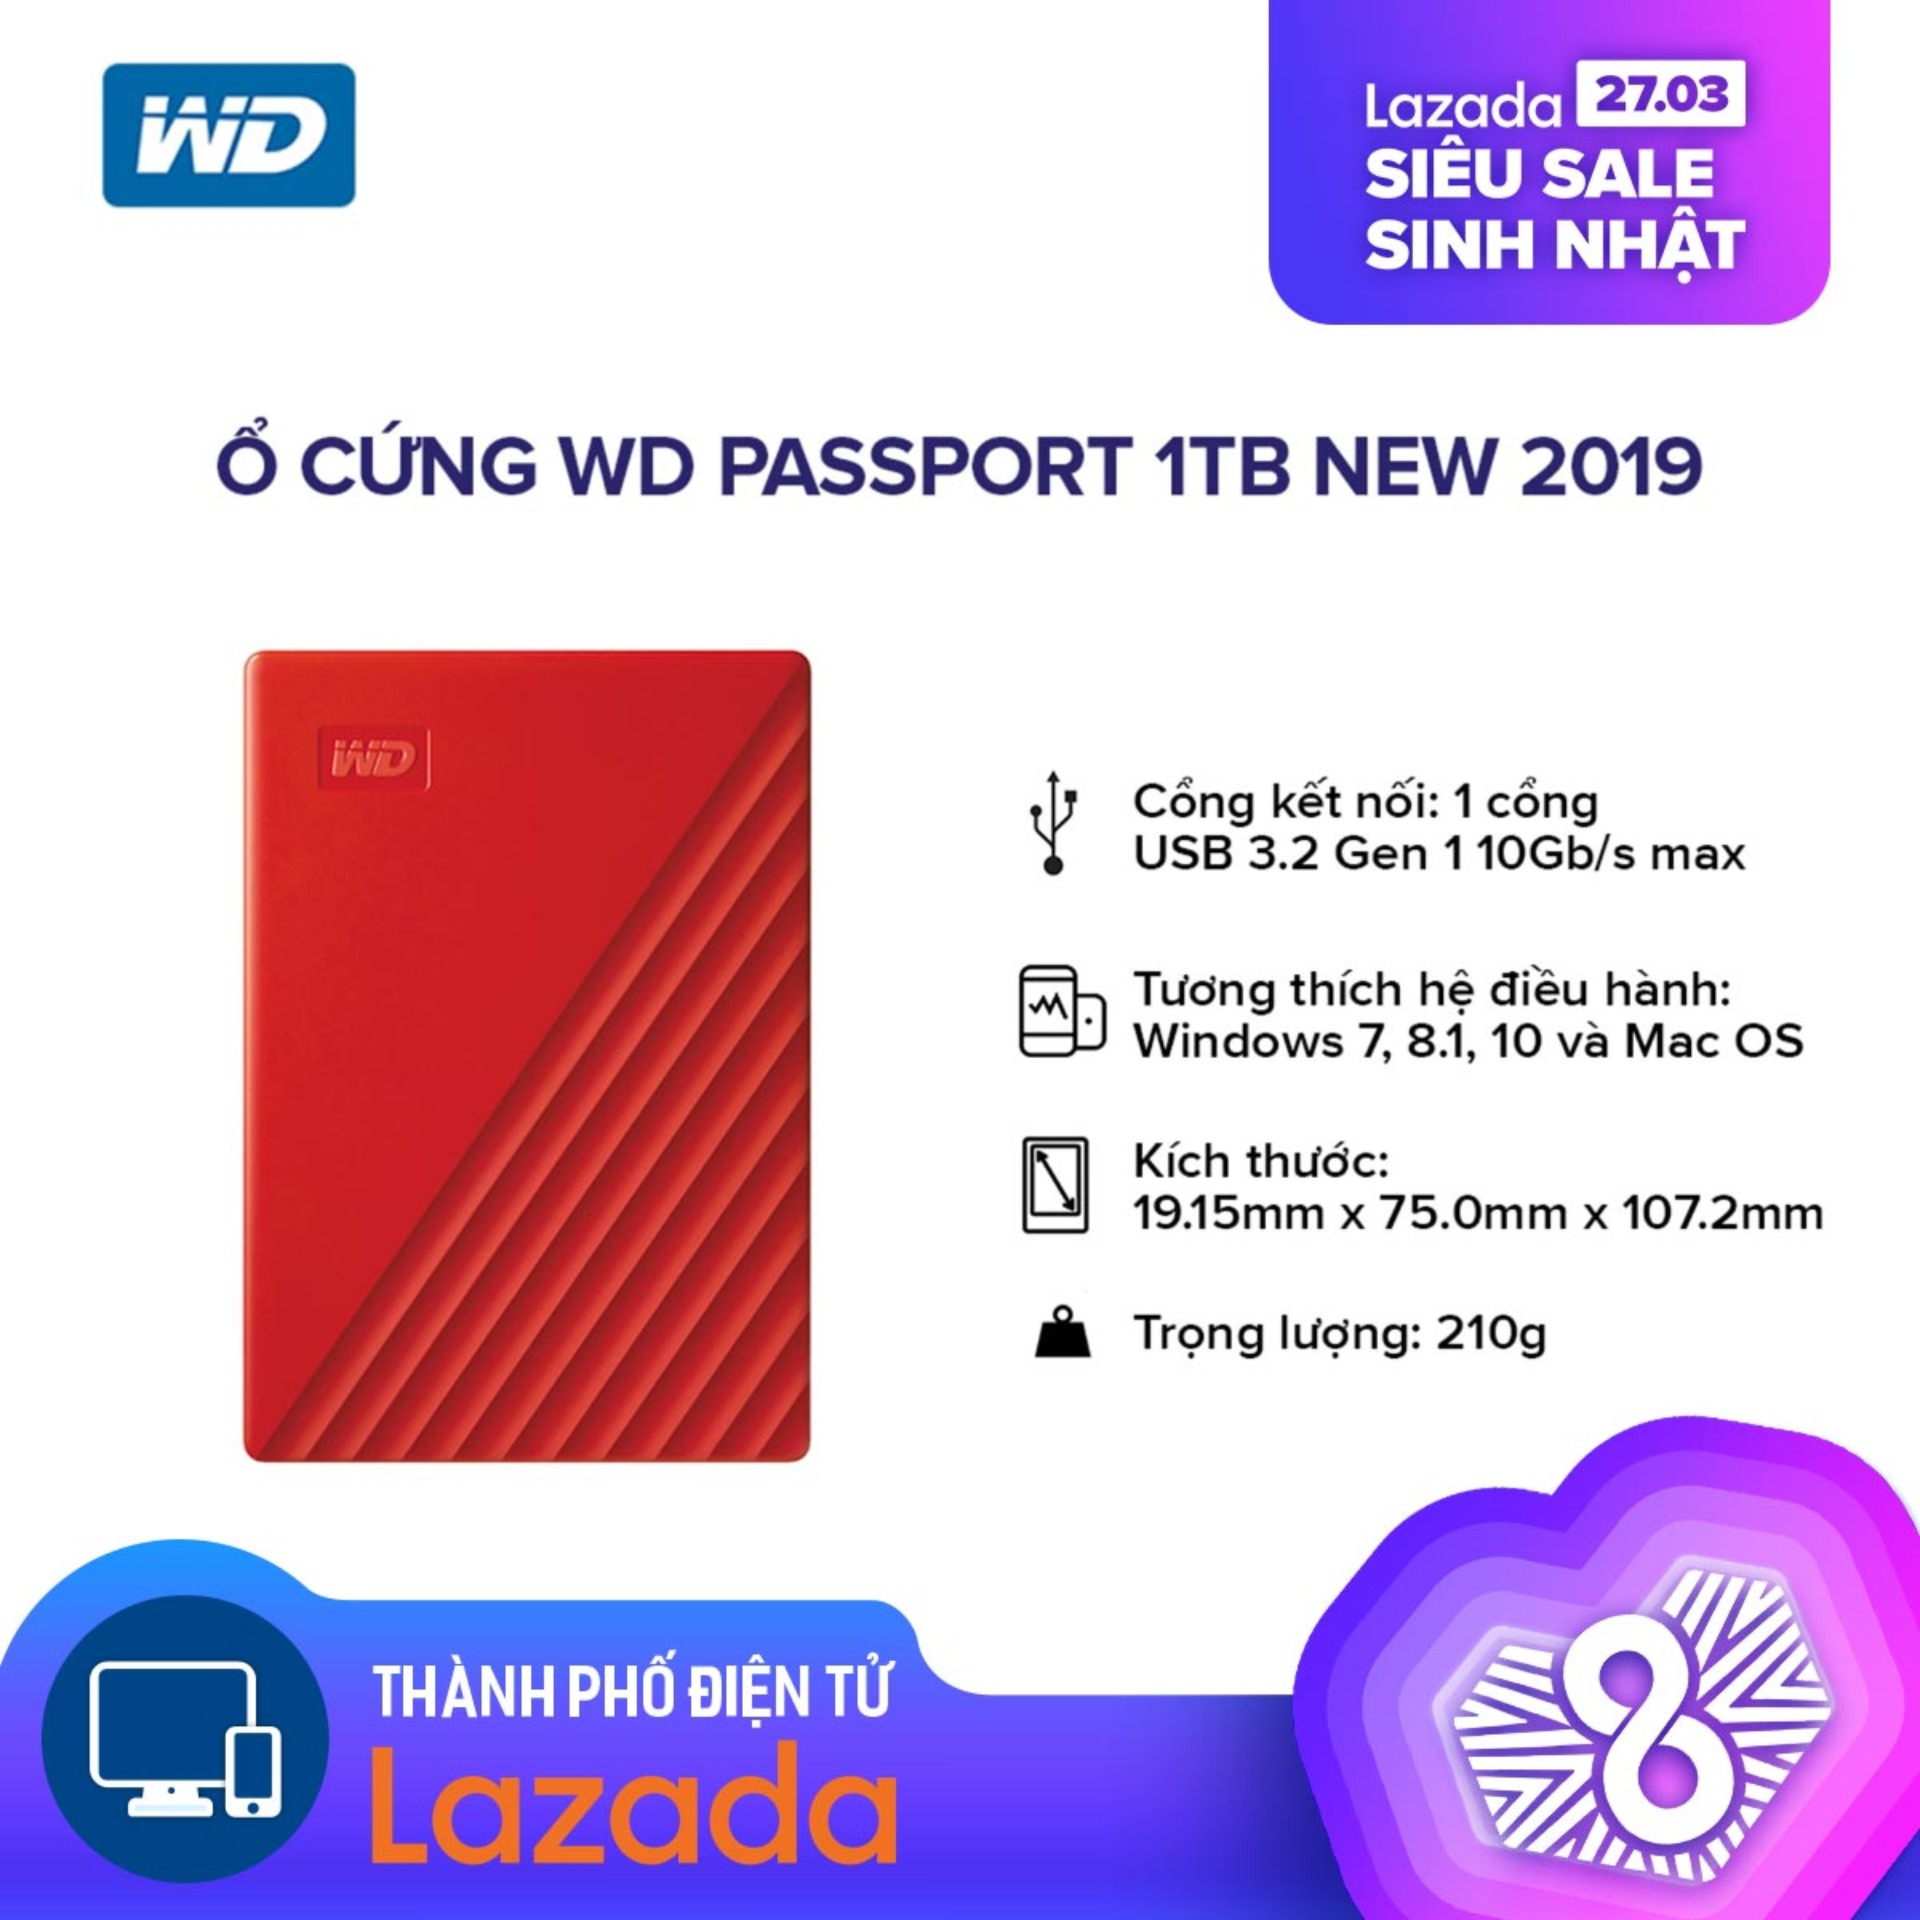 [HÀNG CHÍNH HÃNG - BẢO HÀNH 3 NĂM TOÀN CẦU] Ổ cứng WD Passport 1TB HDD new 2019 l Tặng...